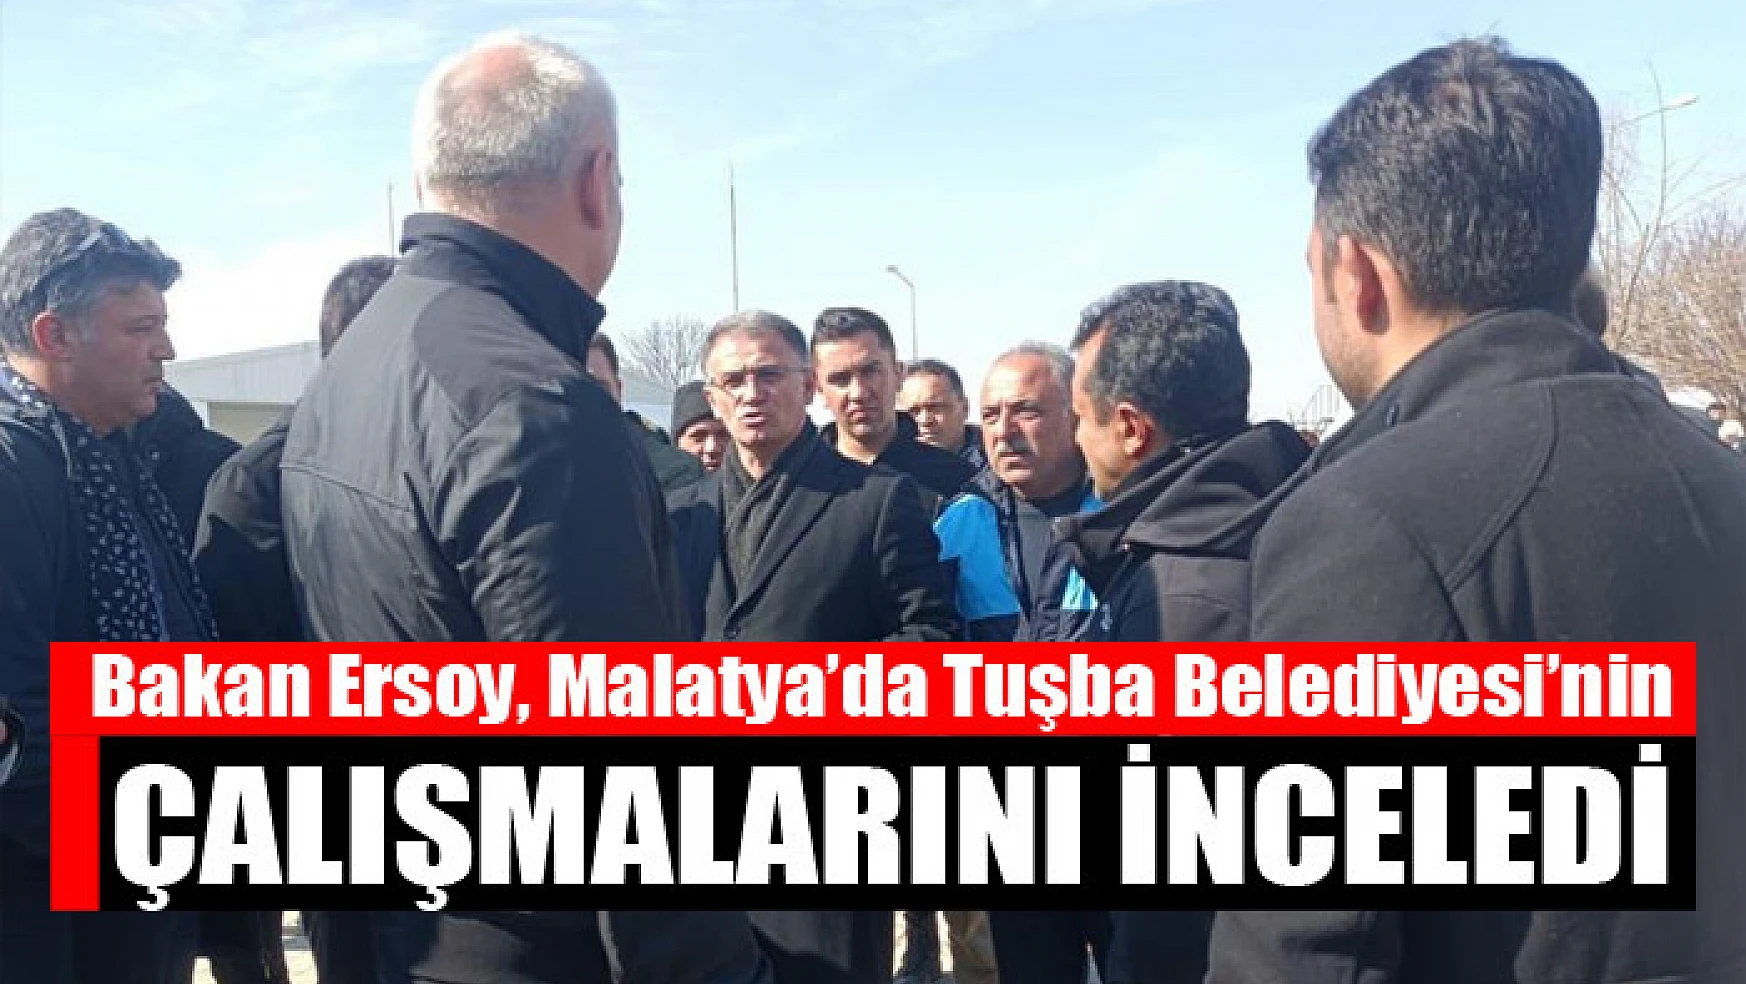 Bakan Ersoy, Malatya'da Tuşba Belediyesi'nin çalışmalarını inceledi